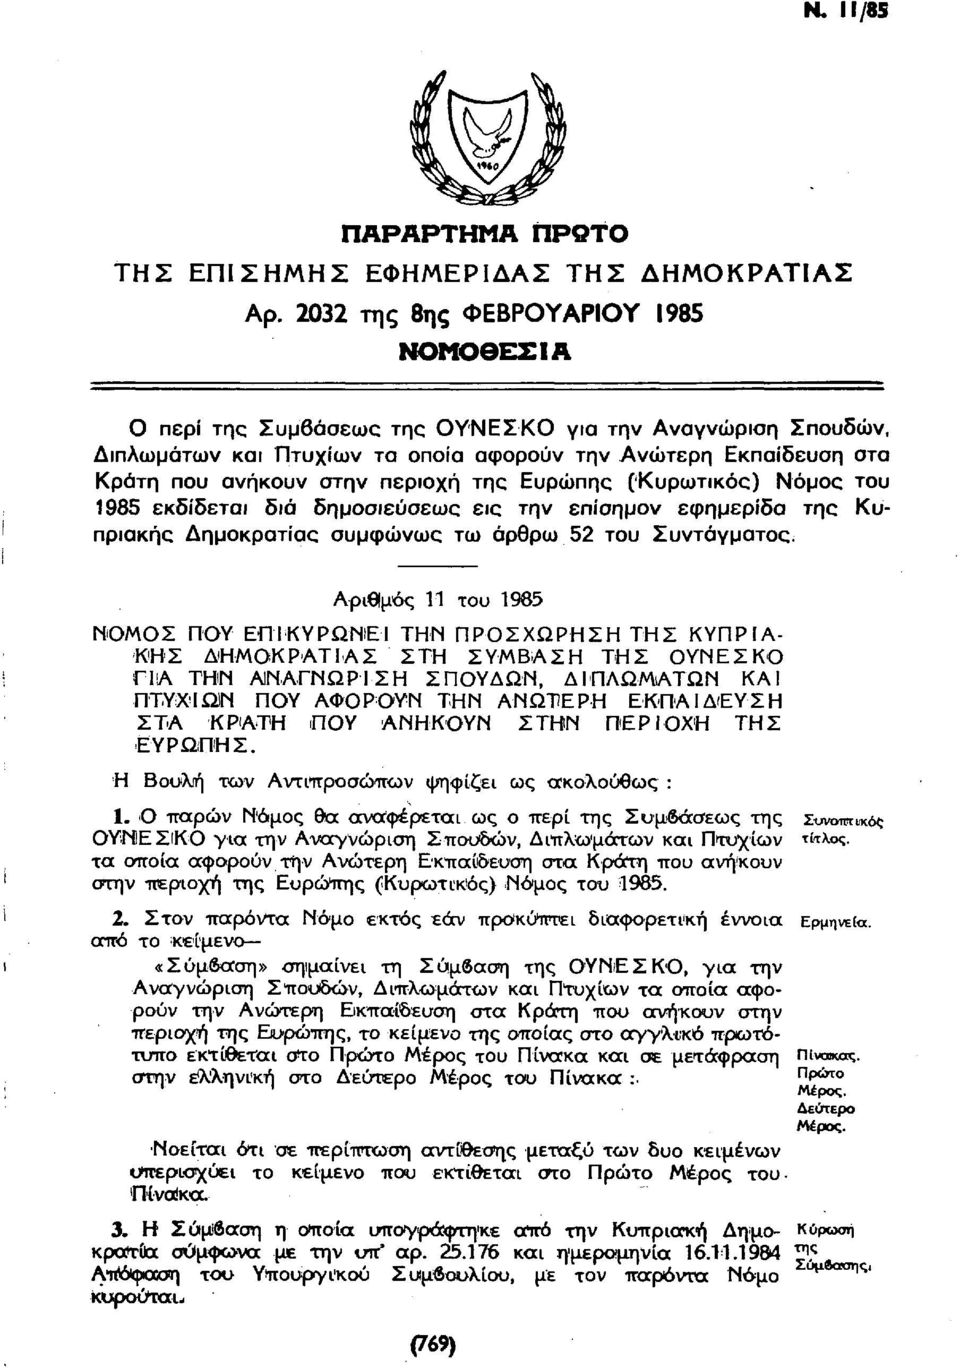 της Ευρώπης (Κυρωτικός) Νόμος του 1985 εκδίδεται διά δημοσιεύσεως εις την επίσημον εφημερίδα της Κυπριακής Δημοκρατίας συμφώνως τω άρθρω 52 του Συντάγματος.